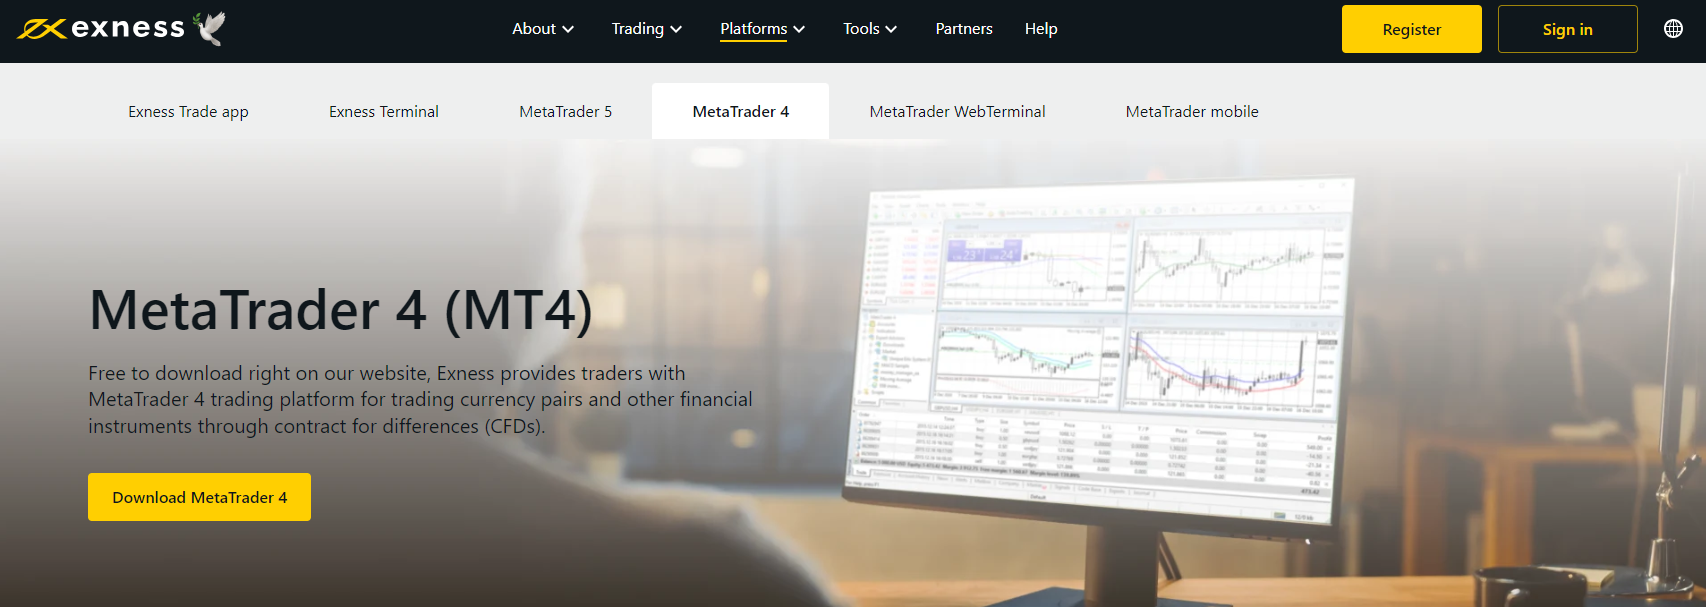 MetaTrader 4 - Plateforme de Trading sur Exness